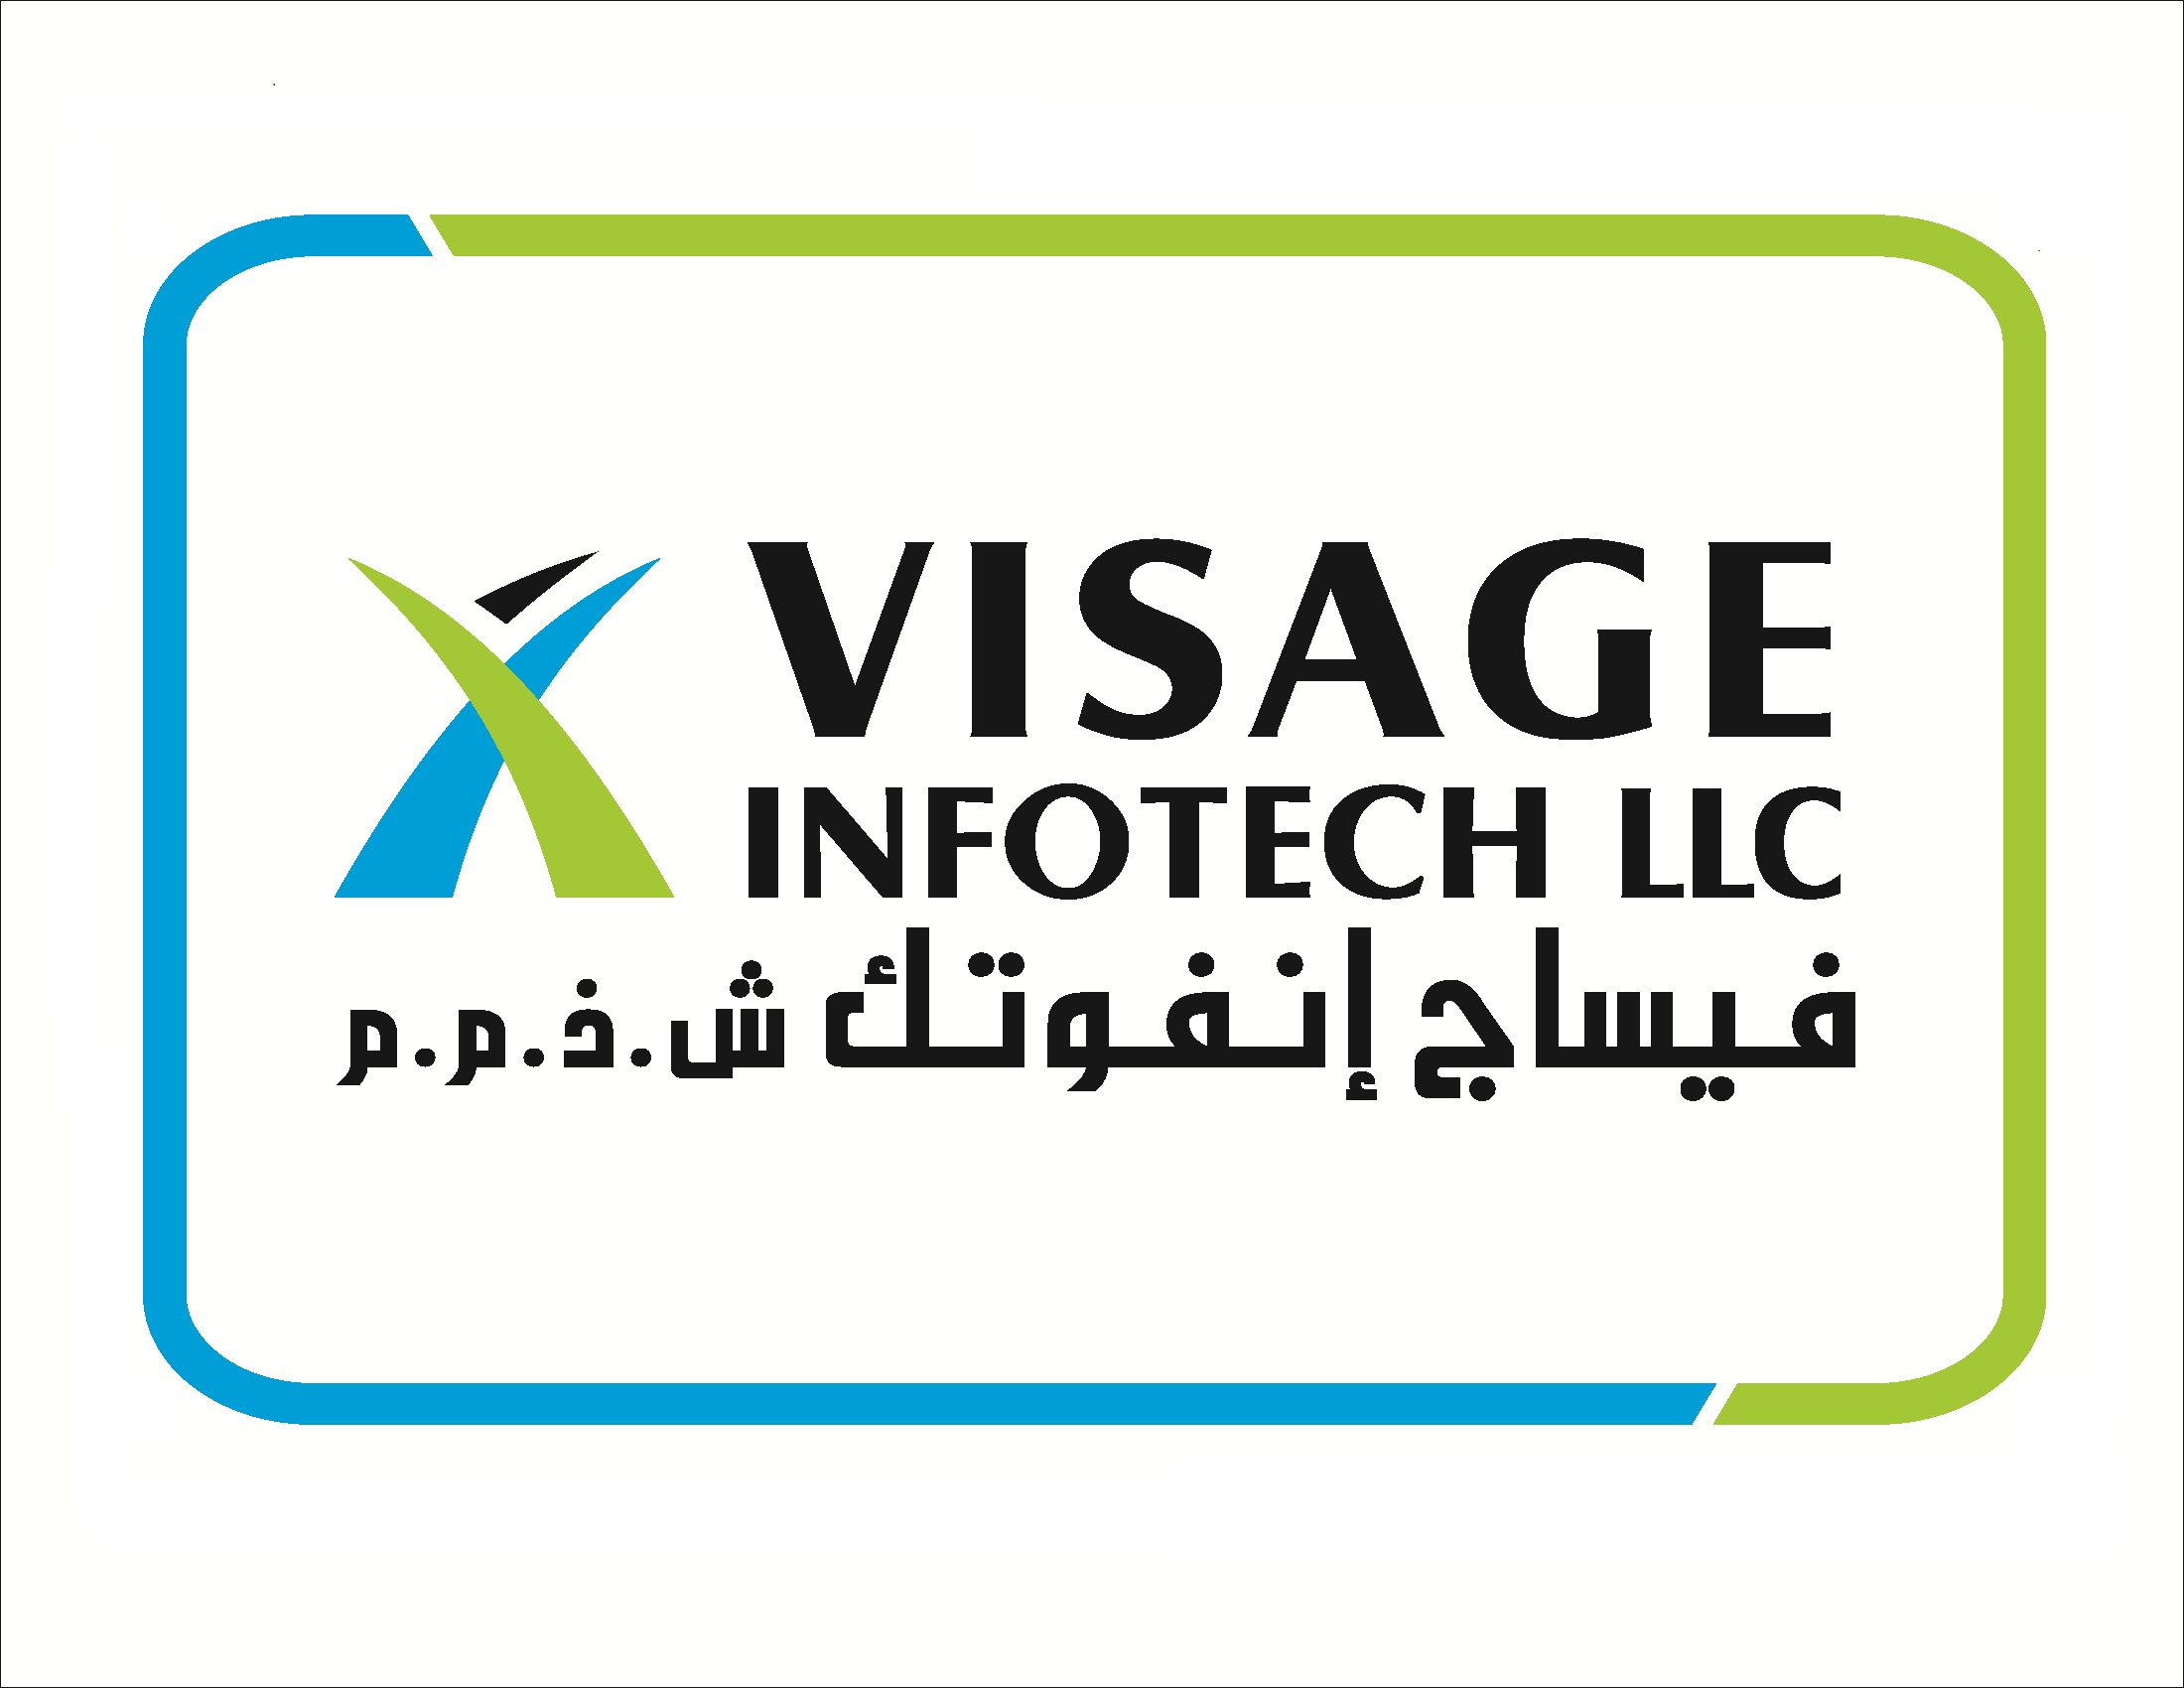 Visage InfoTech